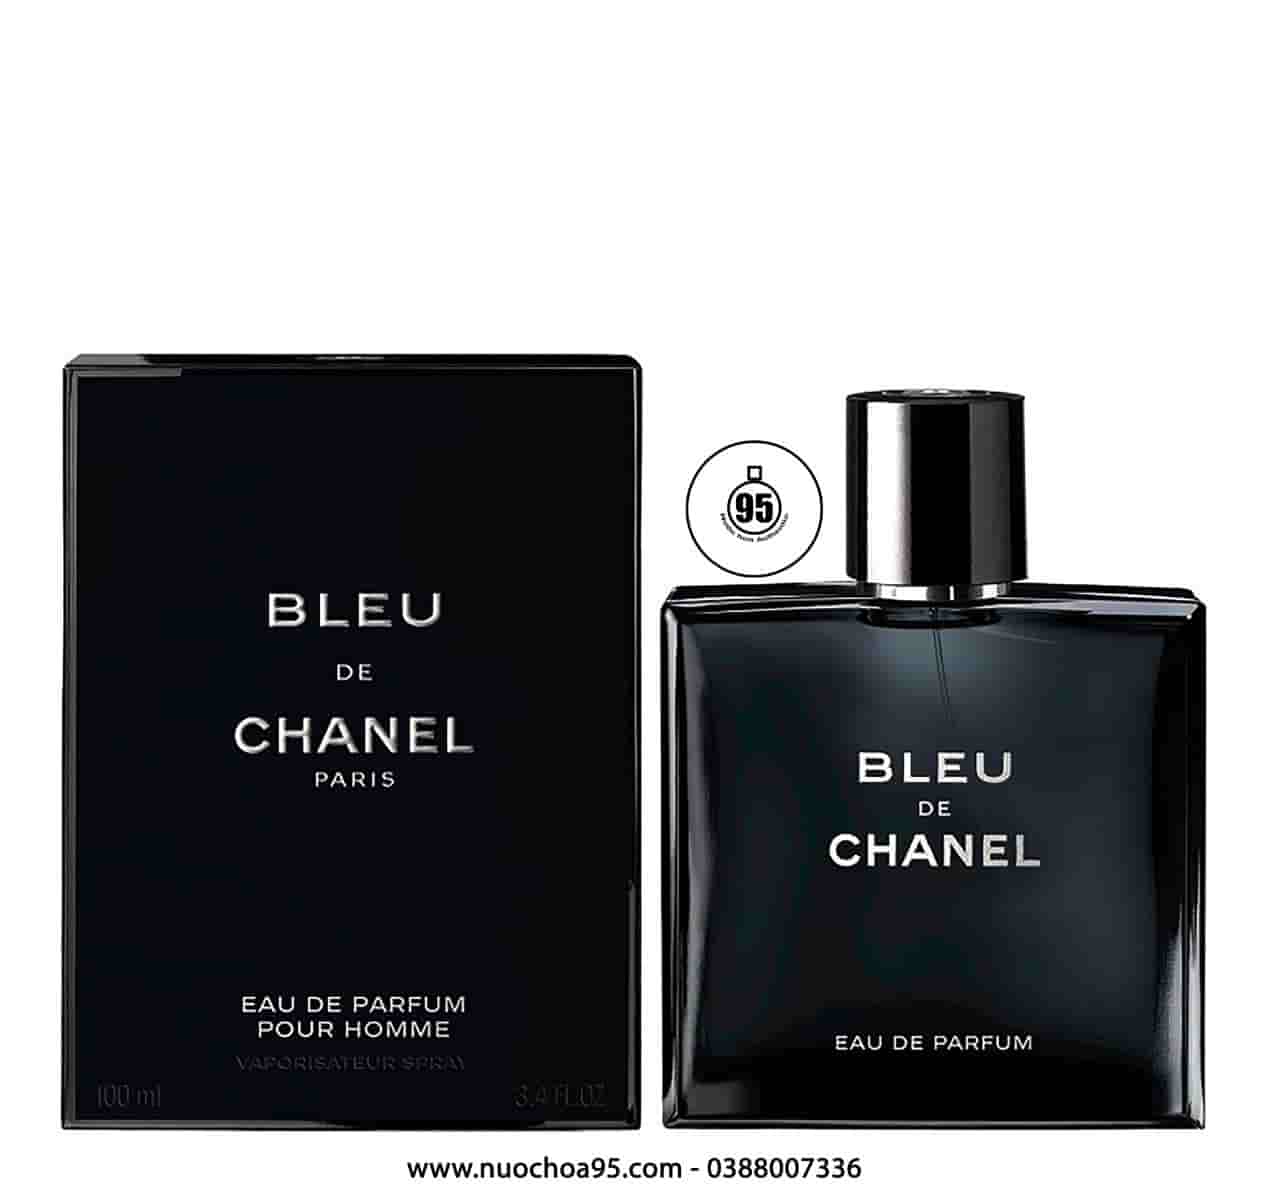 Nước Hoa Nam Bleu De Chanel  Paris 20ml  Mỹ Phẩm Ngọc Mai